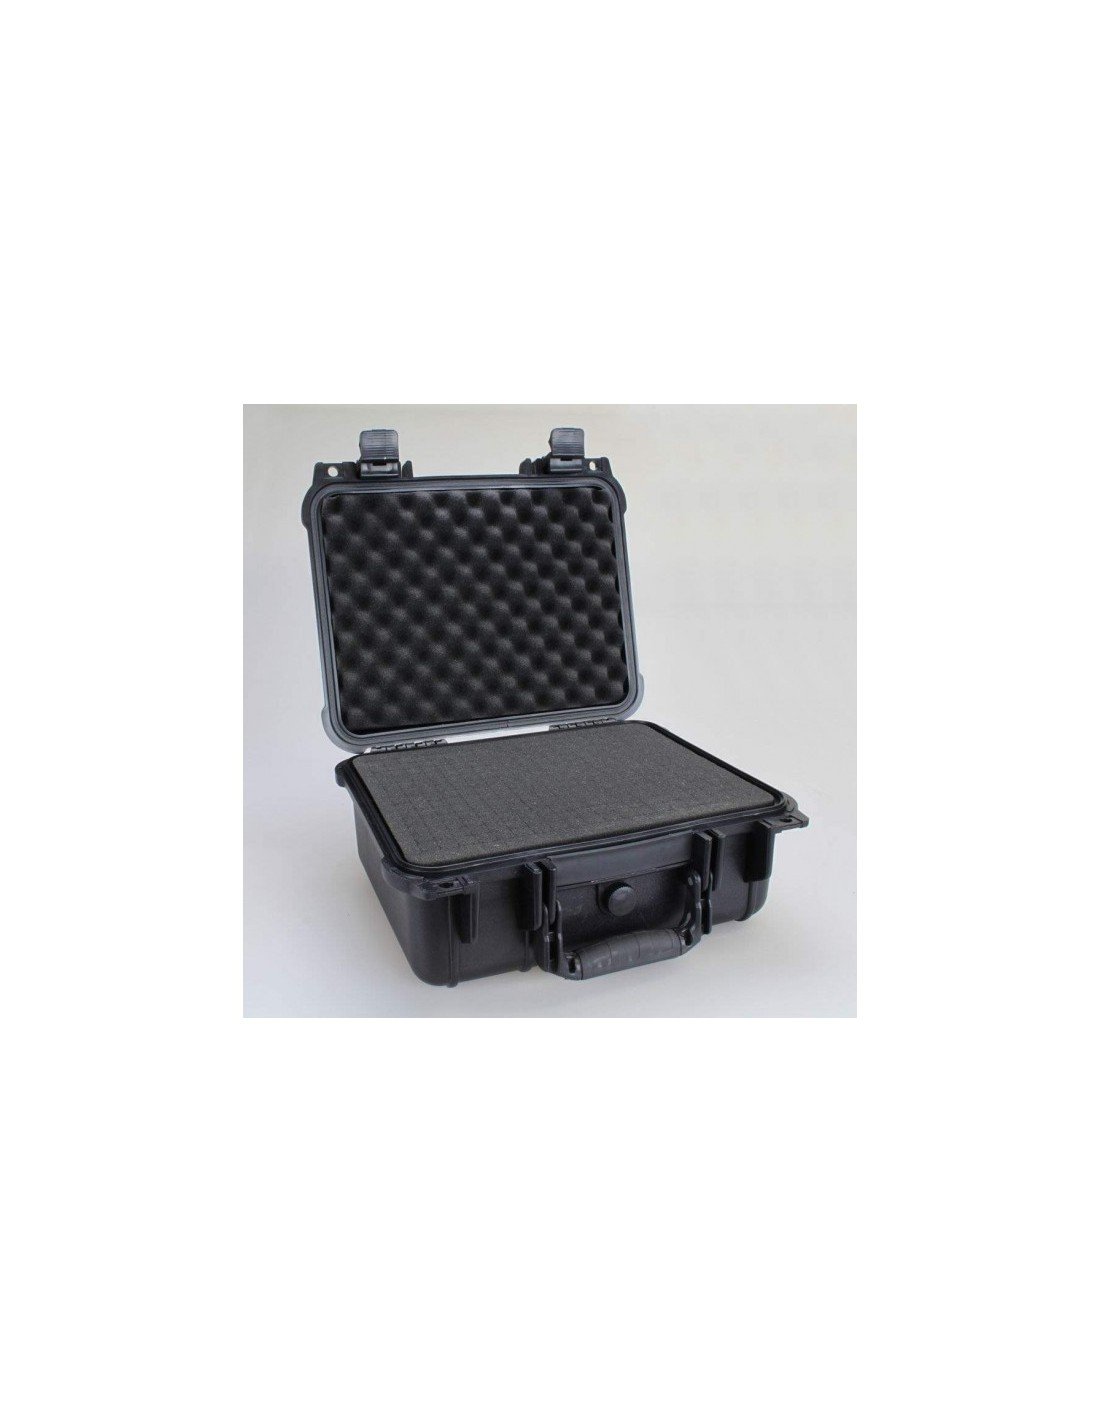 Fatbox VS60 херметически защитен куфар